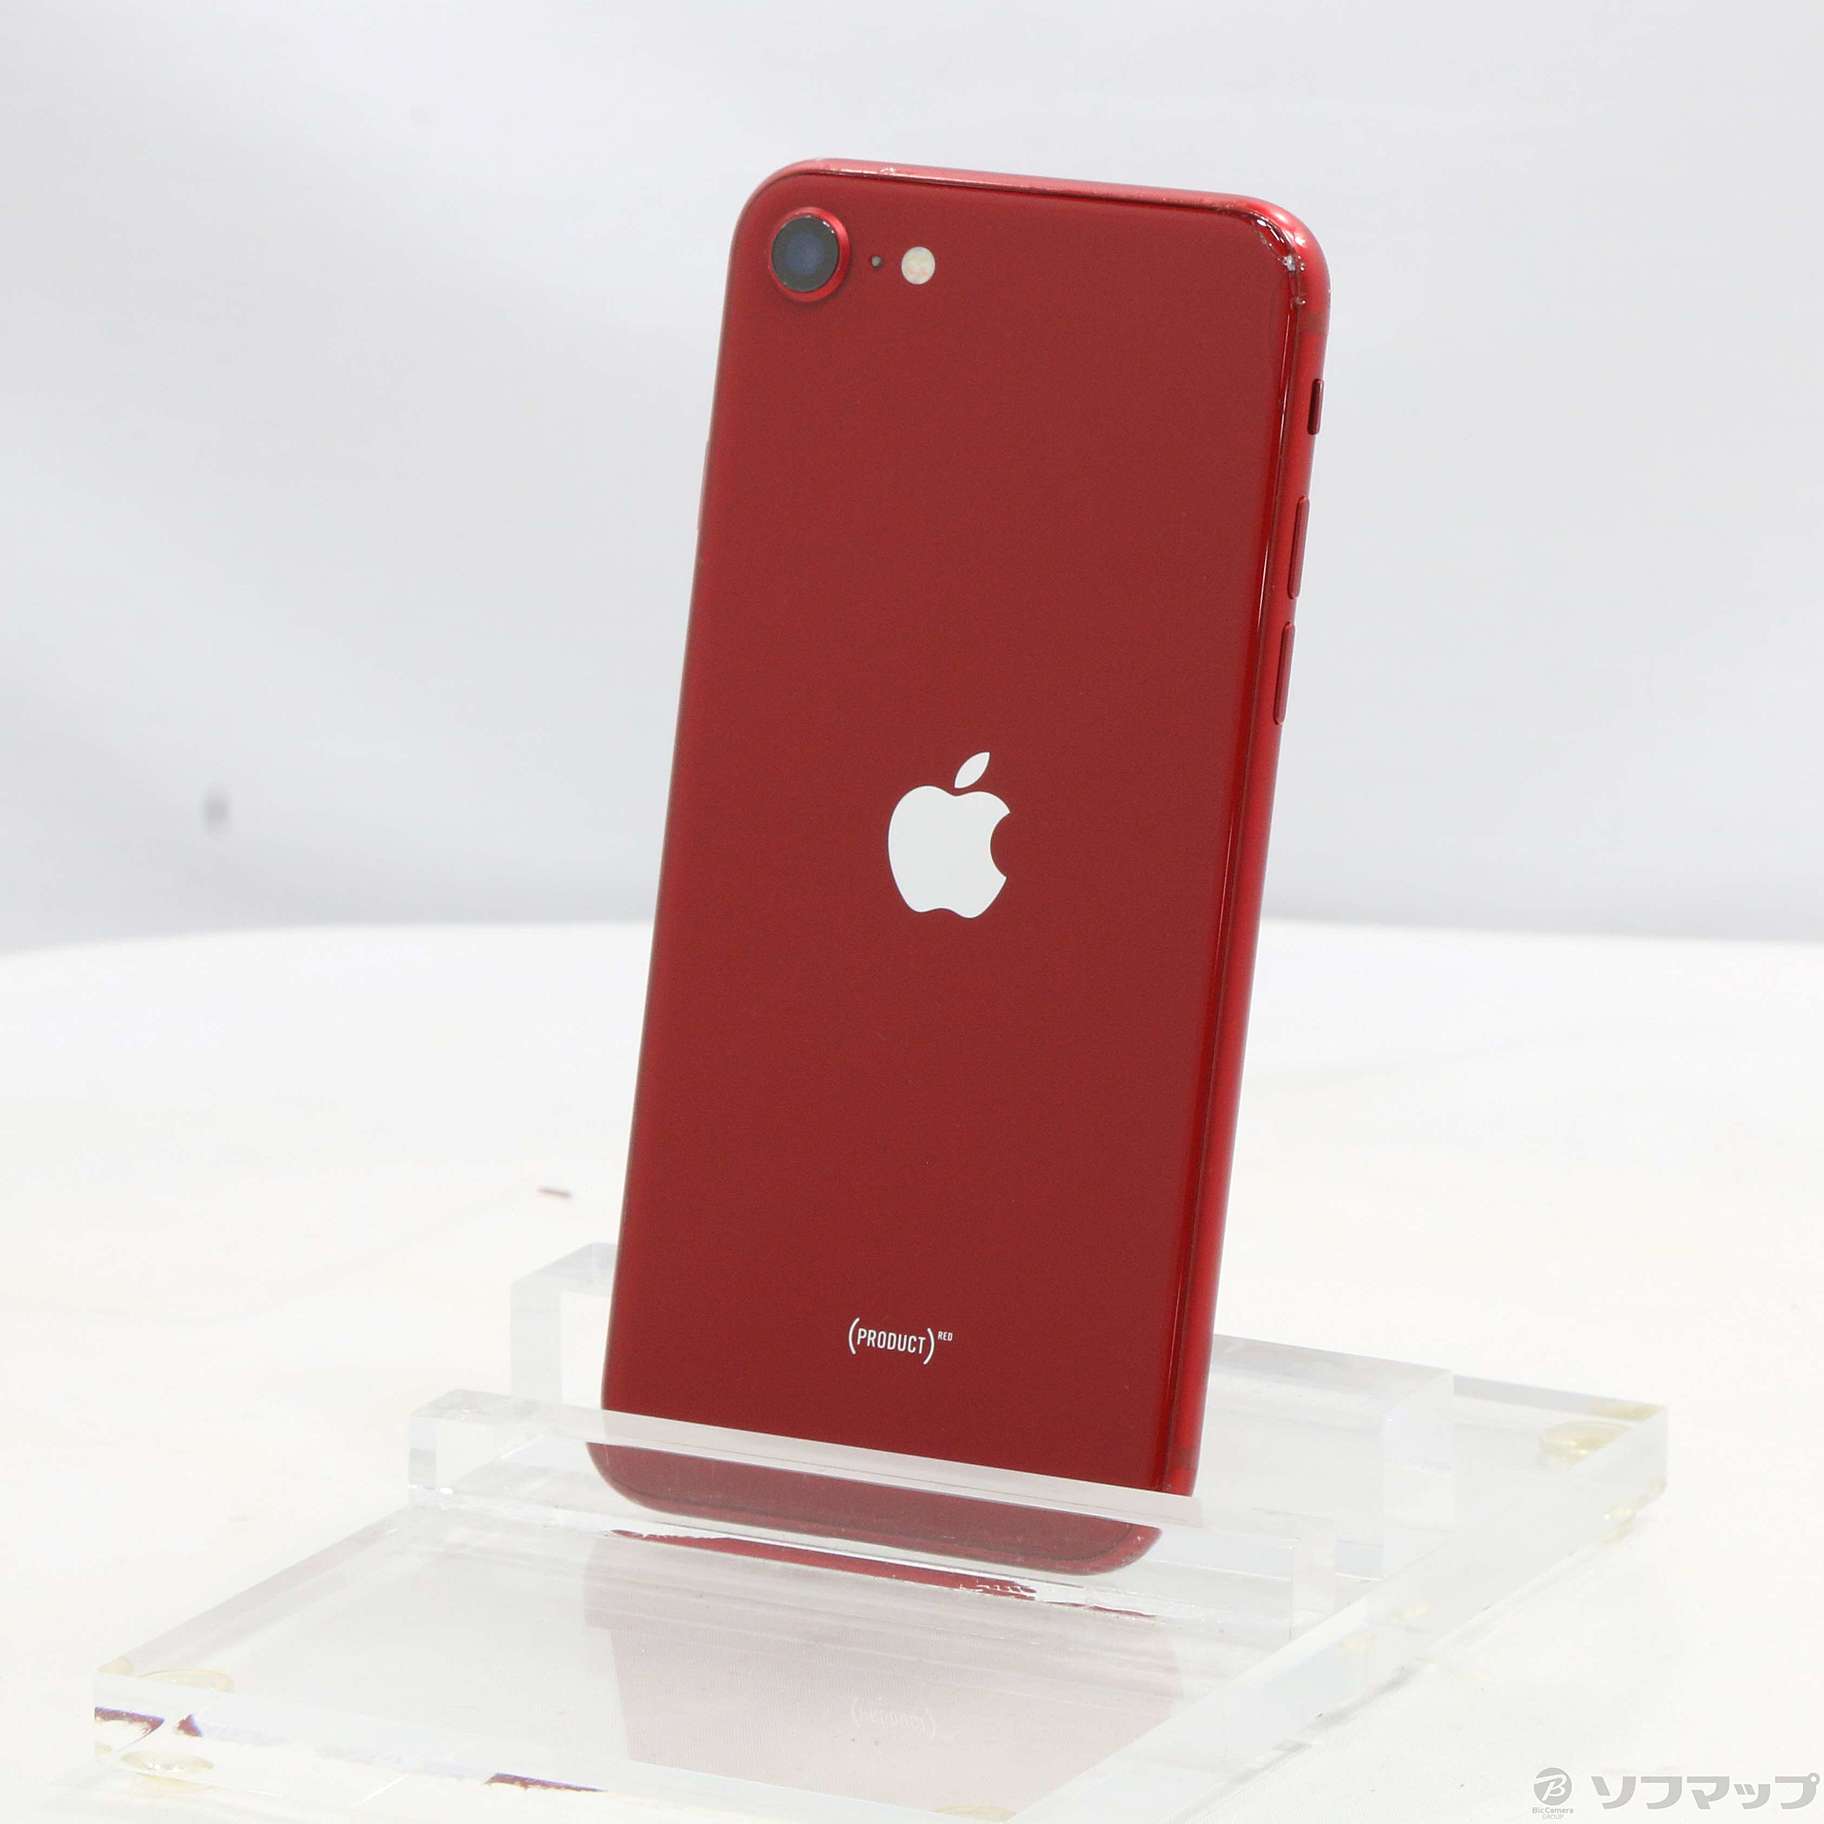 iPhone8Plus 256GB PRODUCT RED 赤 SIMフリー | localcontent.gov.sl